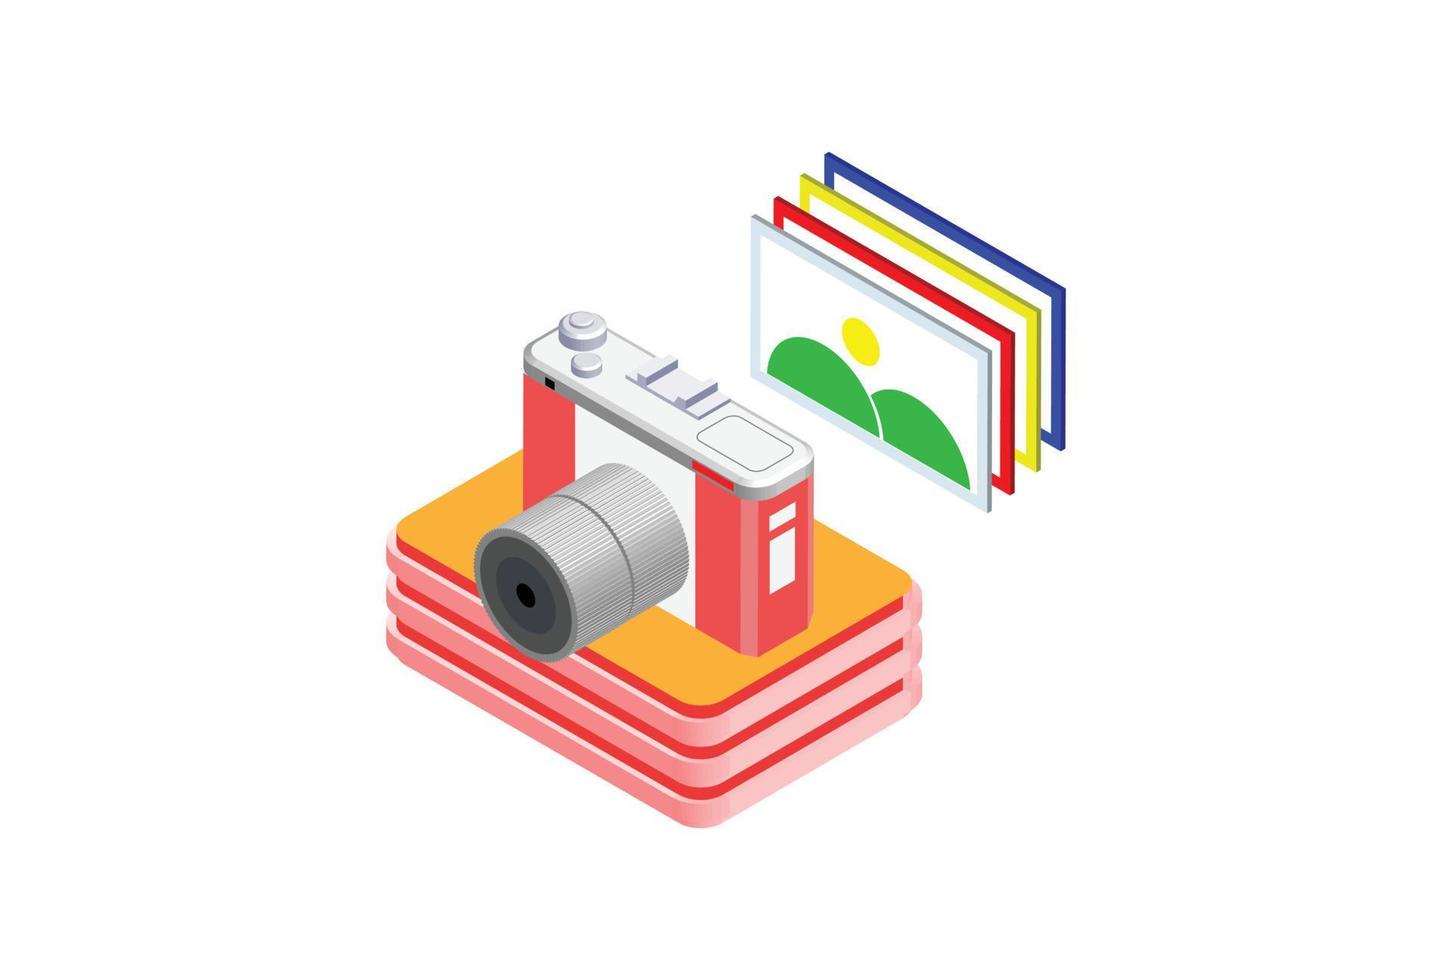 cámara fotográfica digital 3d isométrica, adecuada para diagramas, infografías, ilustración de libros, activos de juegos y otros activos relacionados con gráficos vector